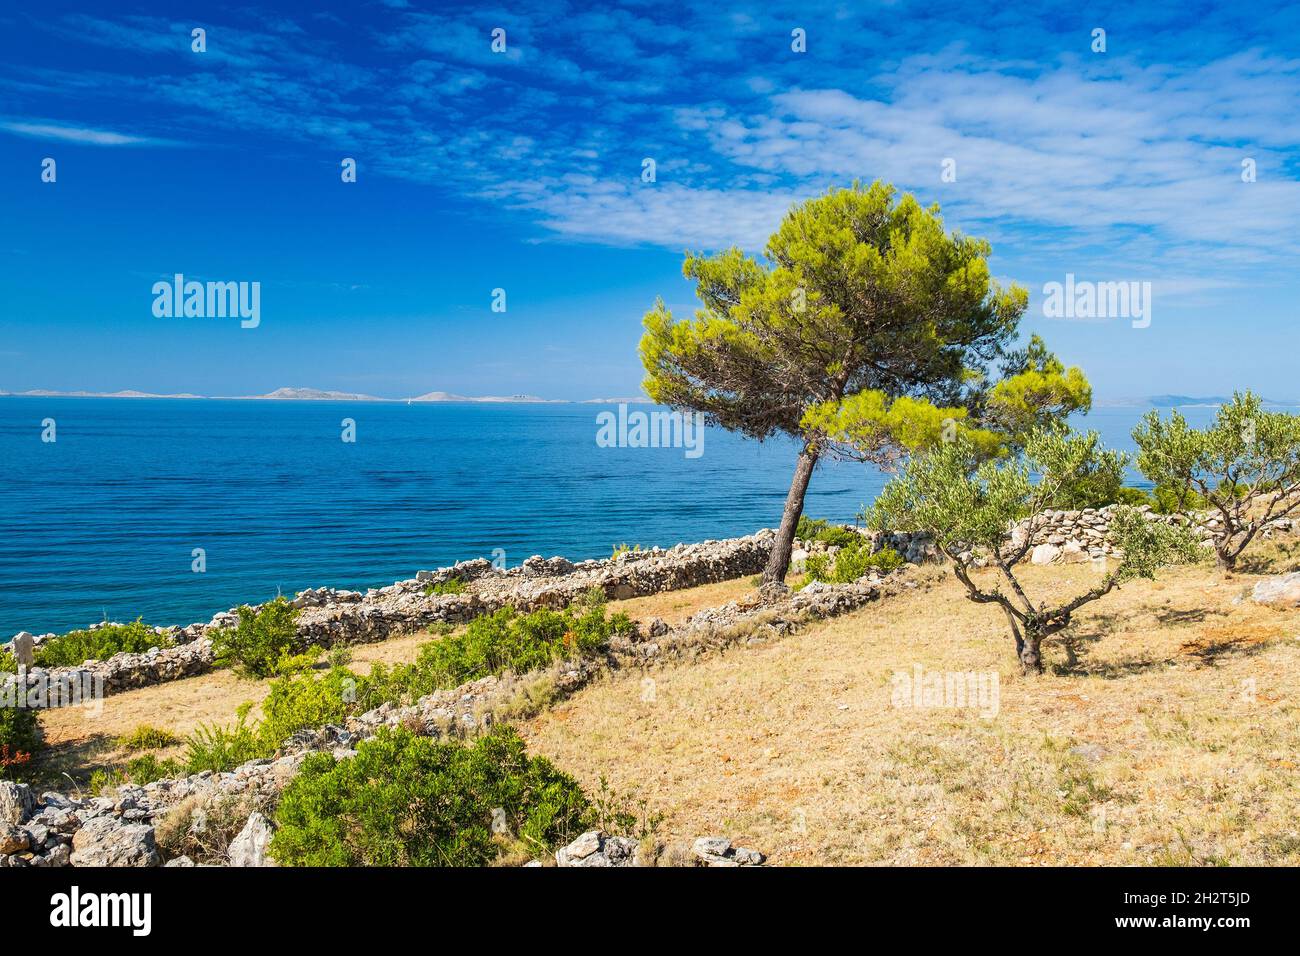 Shore of Murter island archipelago, Dalmatia, Croatia Stock Photo